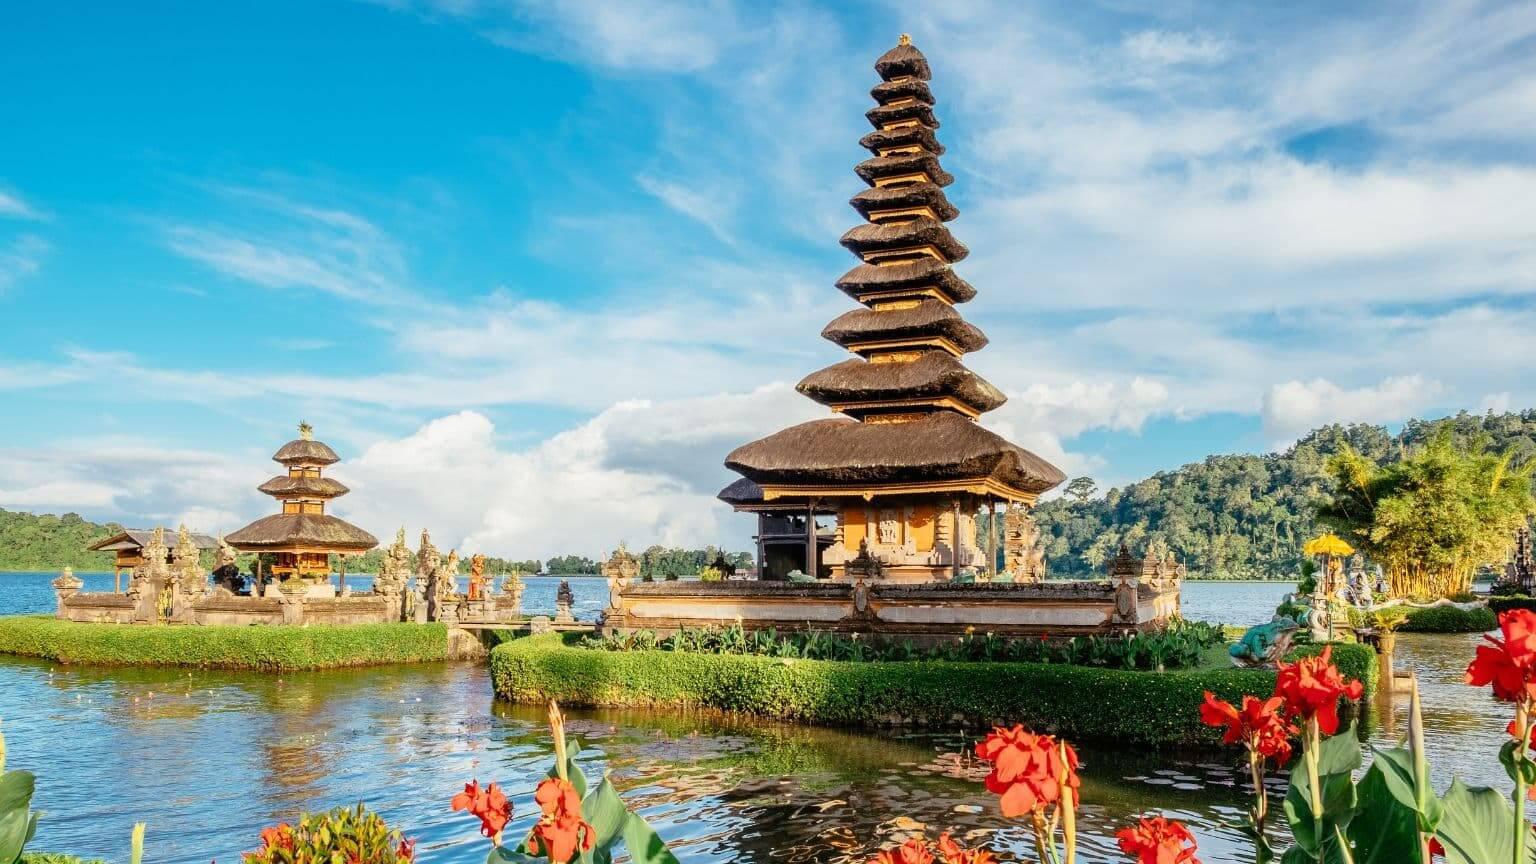 Đền Tanah Lot - Khám phá bí ẩn tại đảo Bali